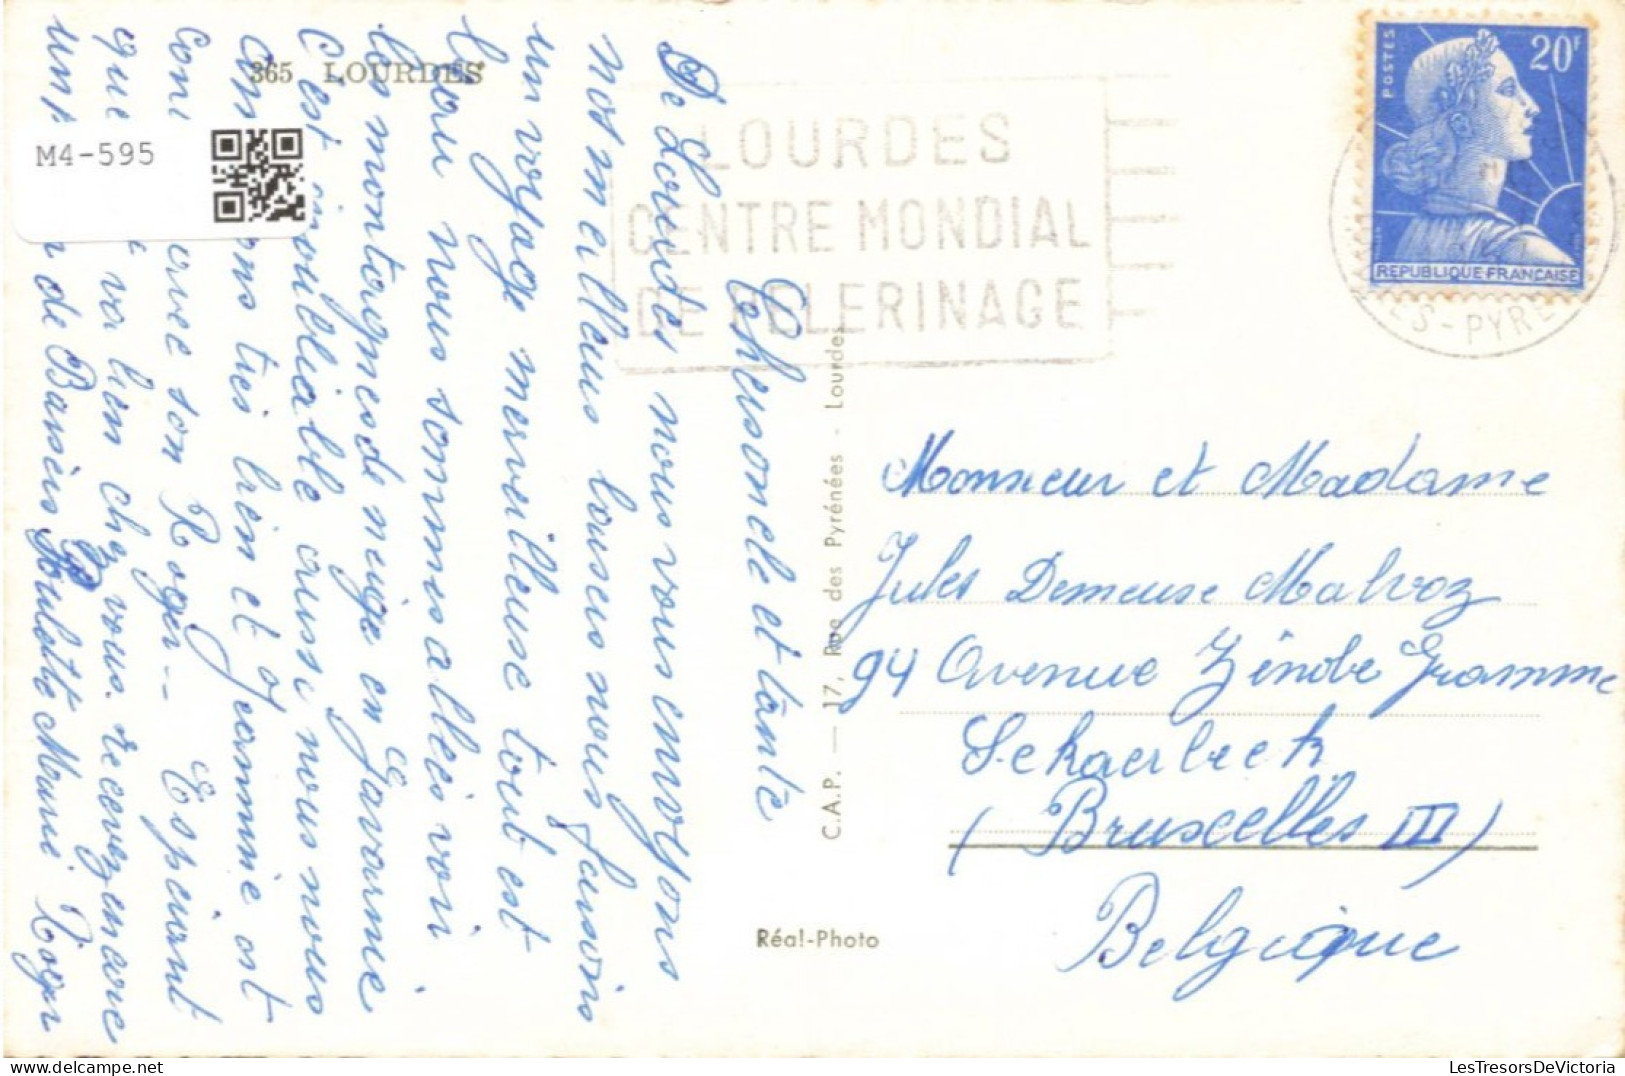 FRANCE - Lourdes - La Basilique - Cauterets - Gavarnie - Le Cirque - Carte Postale Ancienne - Cauterets